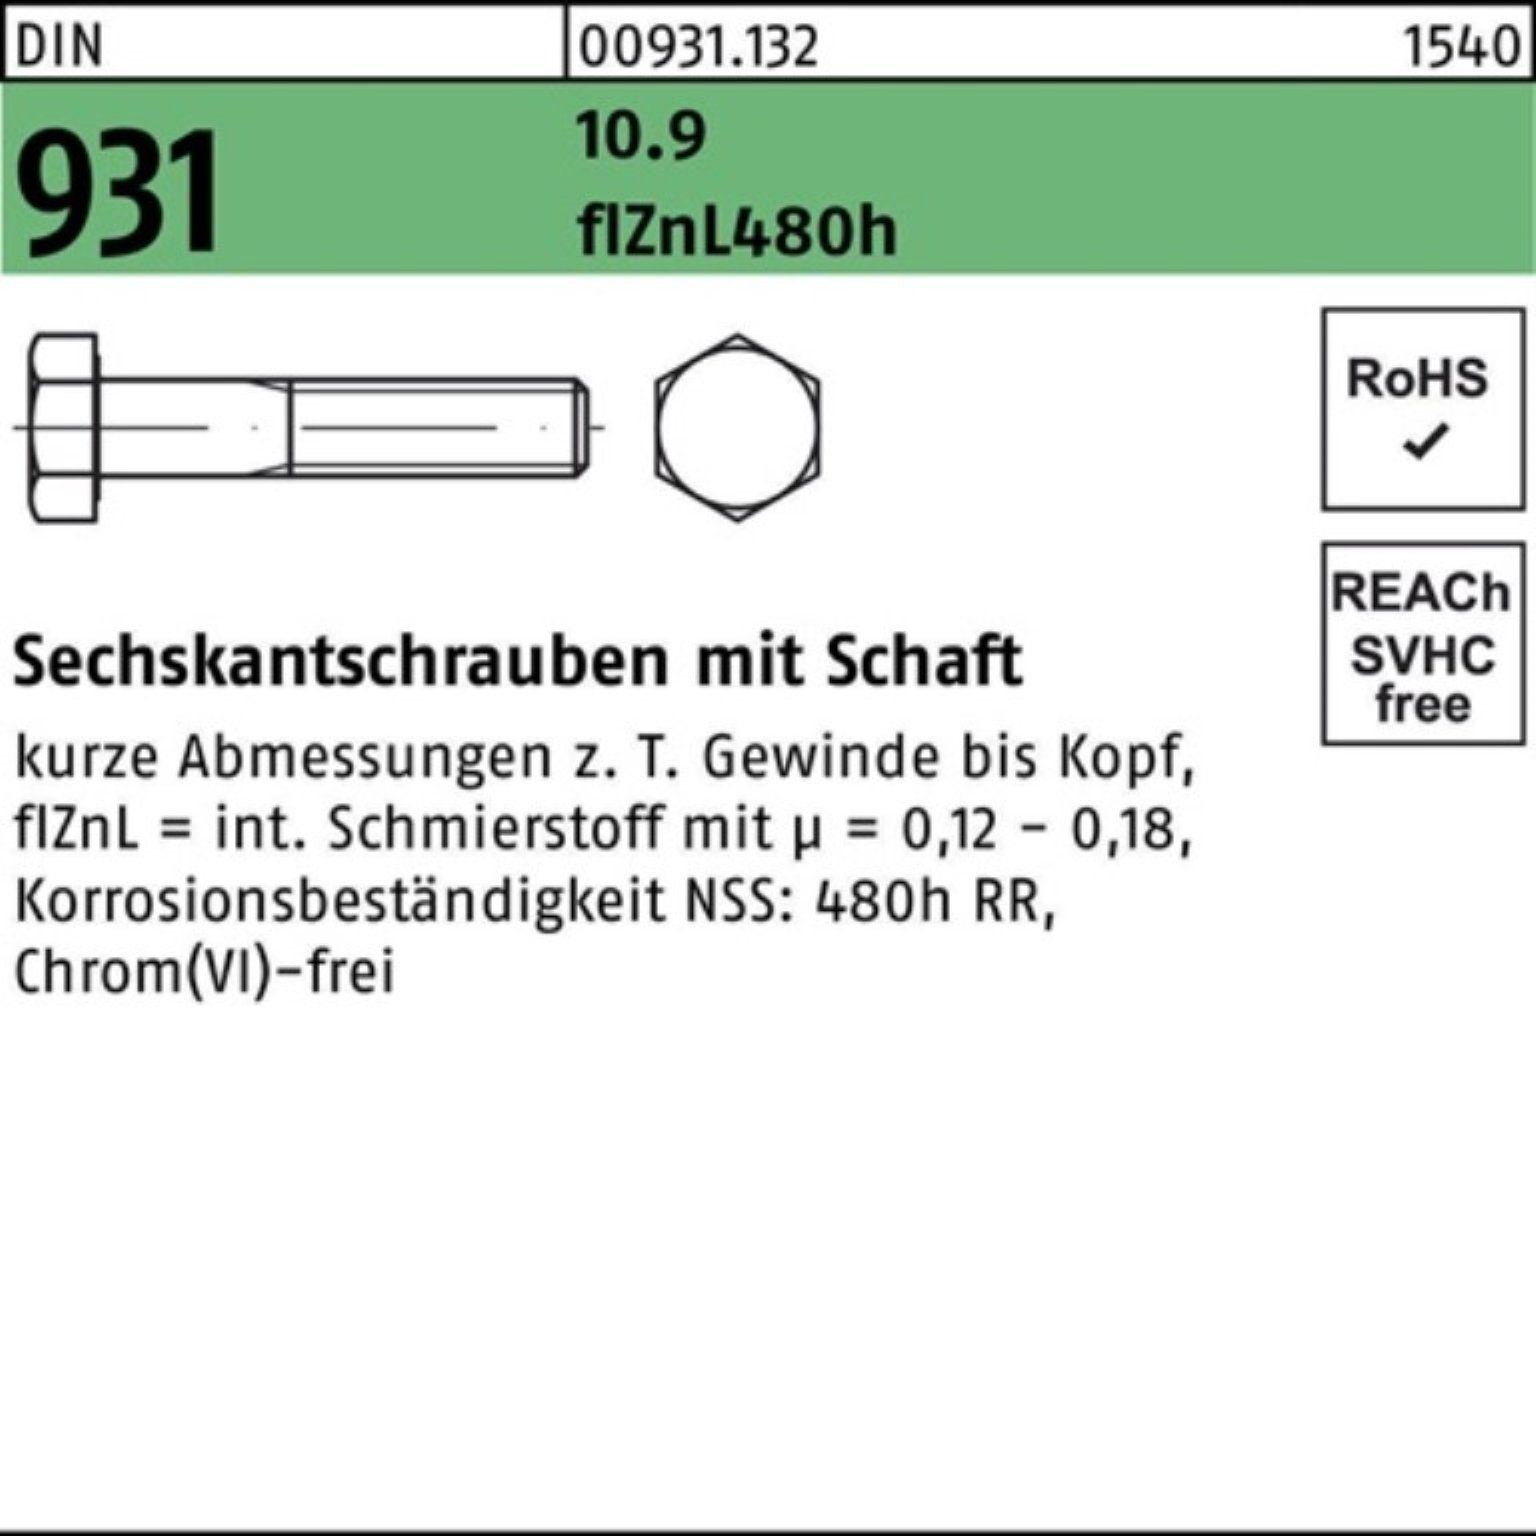 Reyher Sechskantschraube 200er Schaft flZnL/nc/x/x/4 35 10.9 931 DIN M8x Sechskantschraube Pack